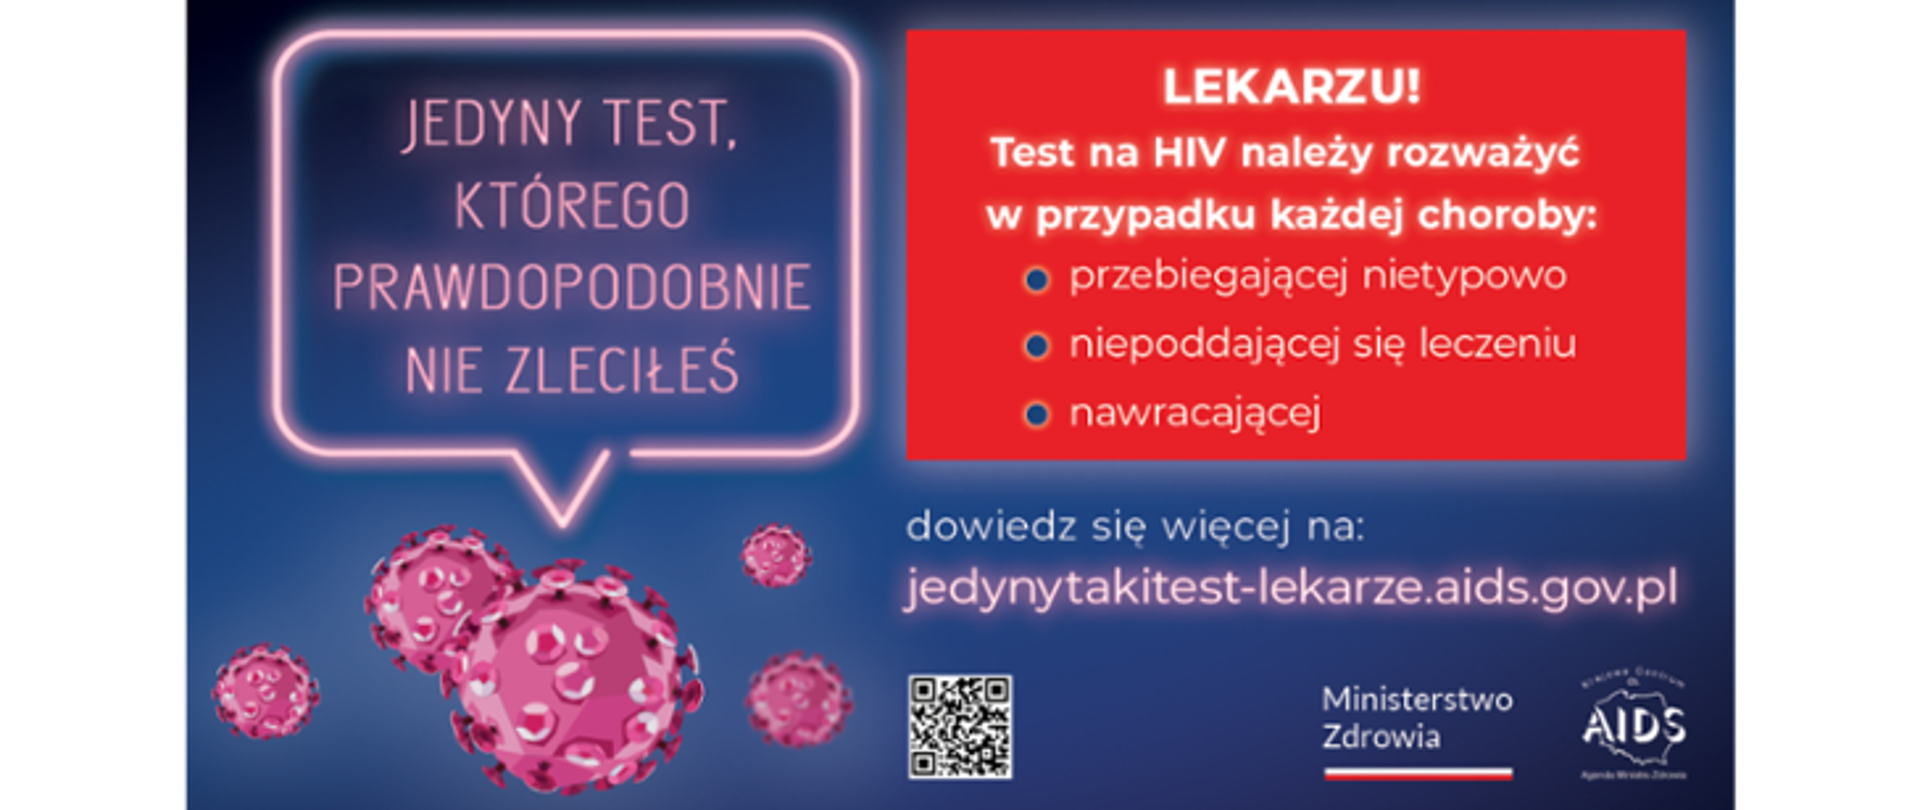 Kampania Krajowego Centrum ds. AIDS skierowana do środowiska medycznego „Jedyny test, którego prawdopodobnie nie zleciłeś”